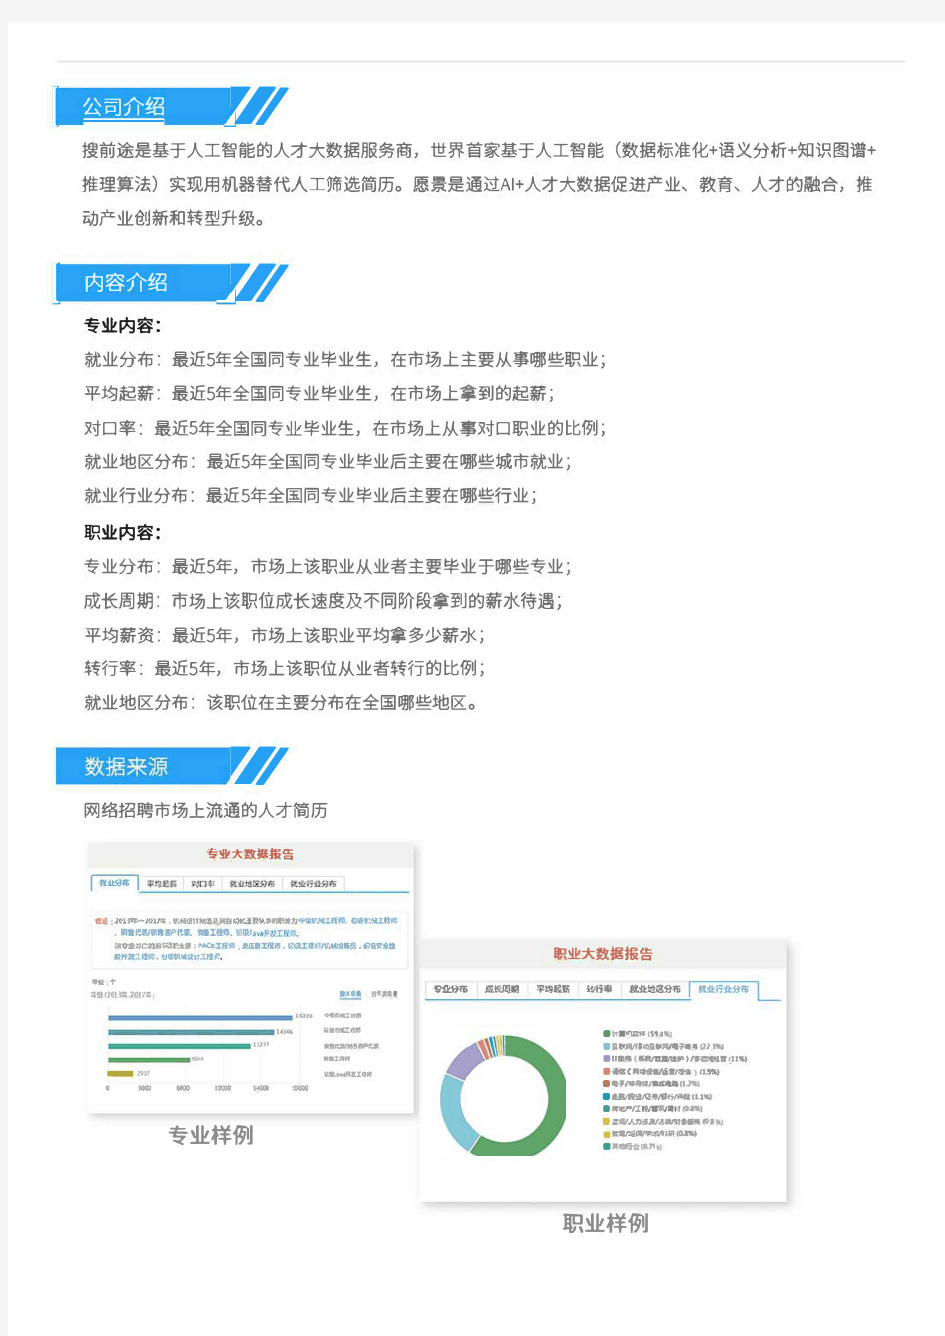 2013-2017年北京印刷学院包装工程专业毕业生就业大数据报告